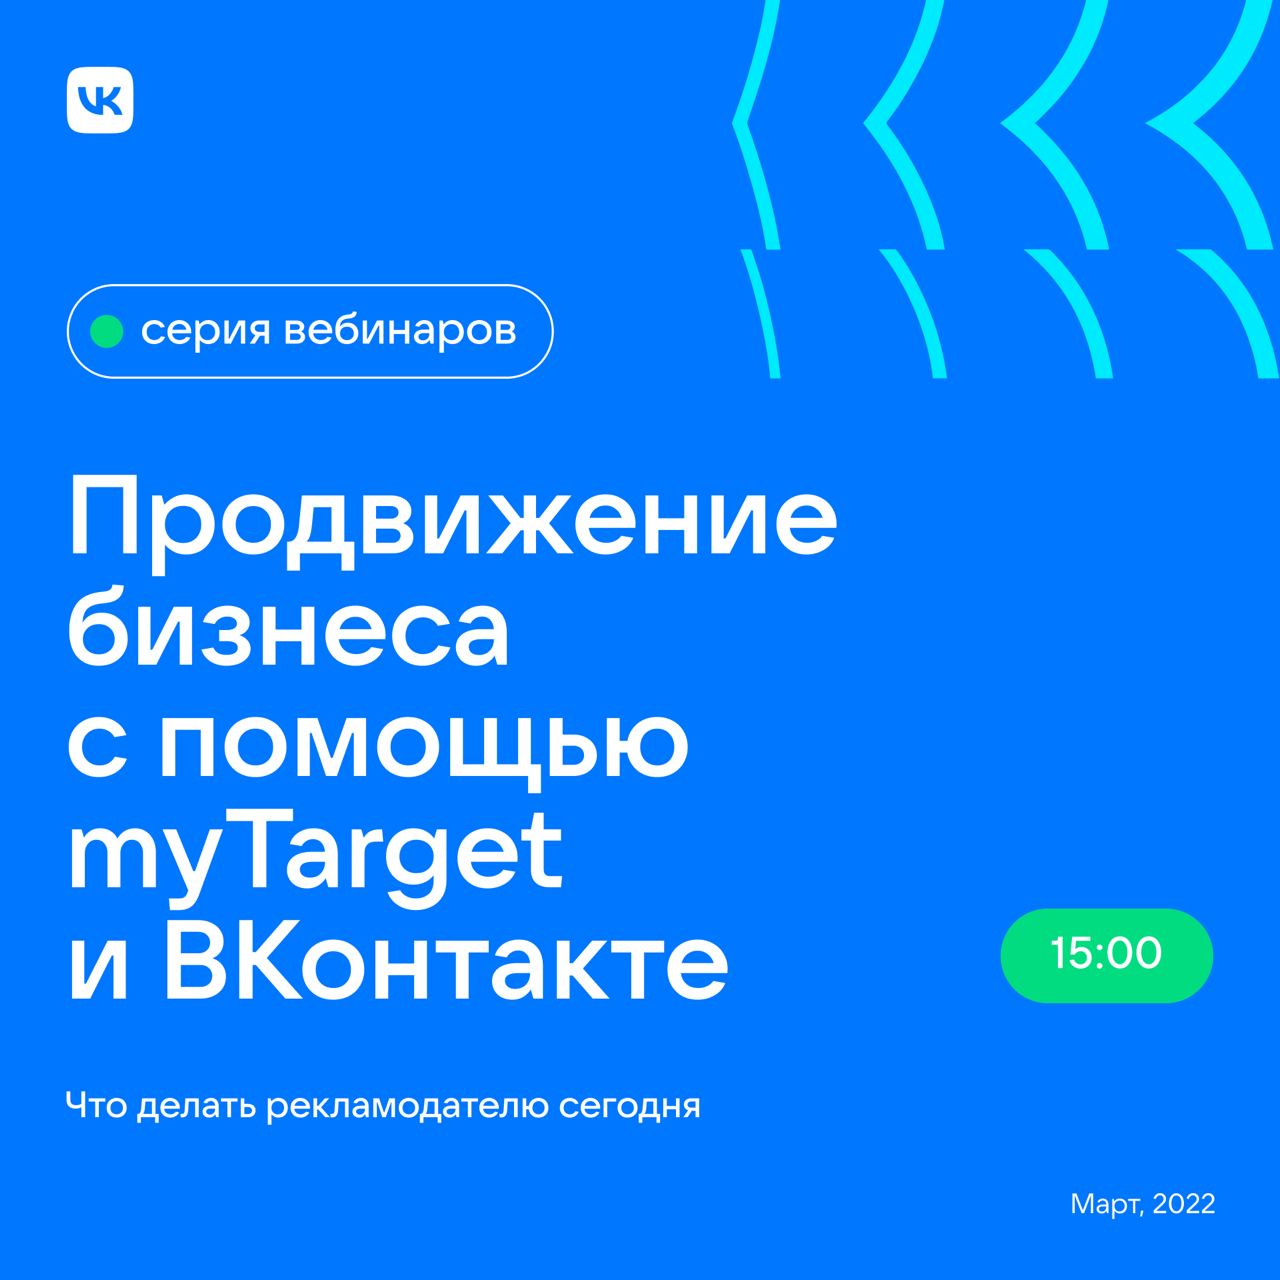 Онлайн-марафон «Продвижение бизнеса с помощью myTarget и ВКонтакте»